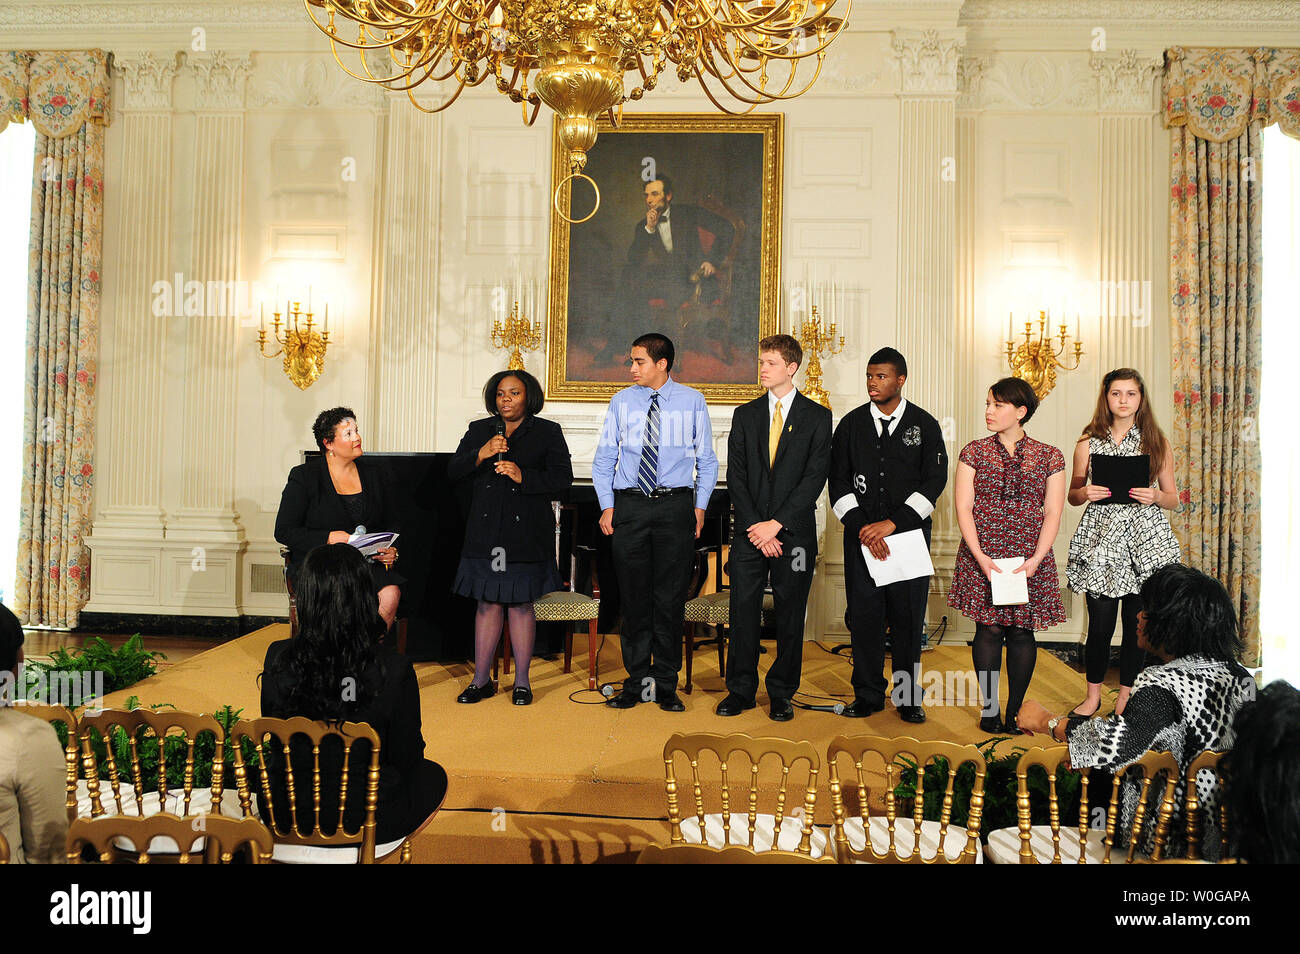 Studenten aus dem ganzen Land präsentieren Poesie im Weißen Haus Poesie, Musik und Kunst Workshop von der First Lady Michelle Obama im Weißen Haus in Washington hielt am 11. Mai 2011. Stockfoto